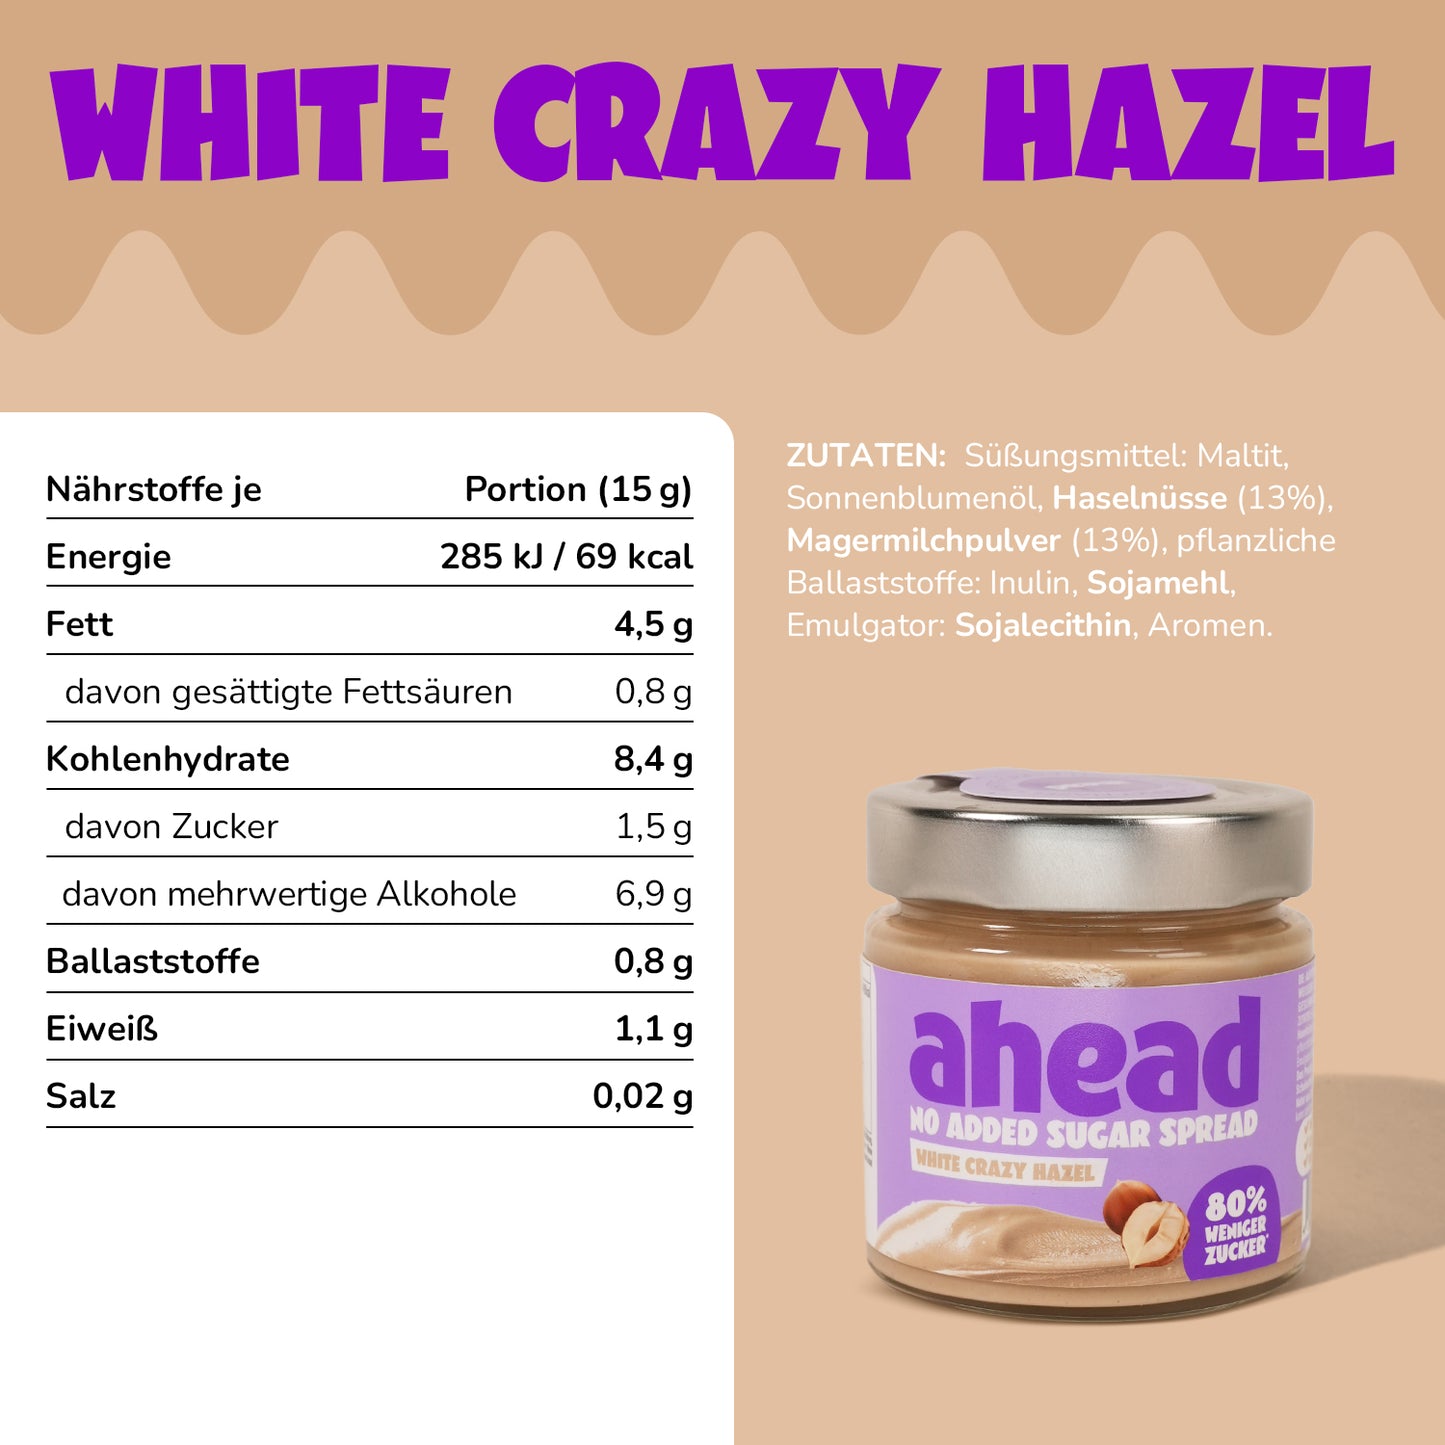 White Crazy Hazel